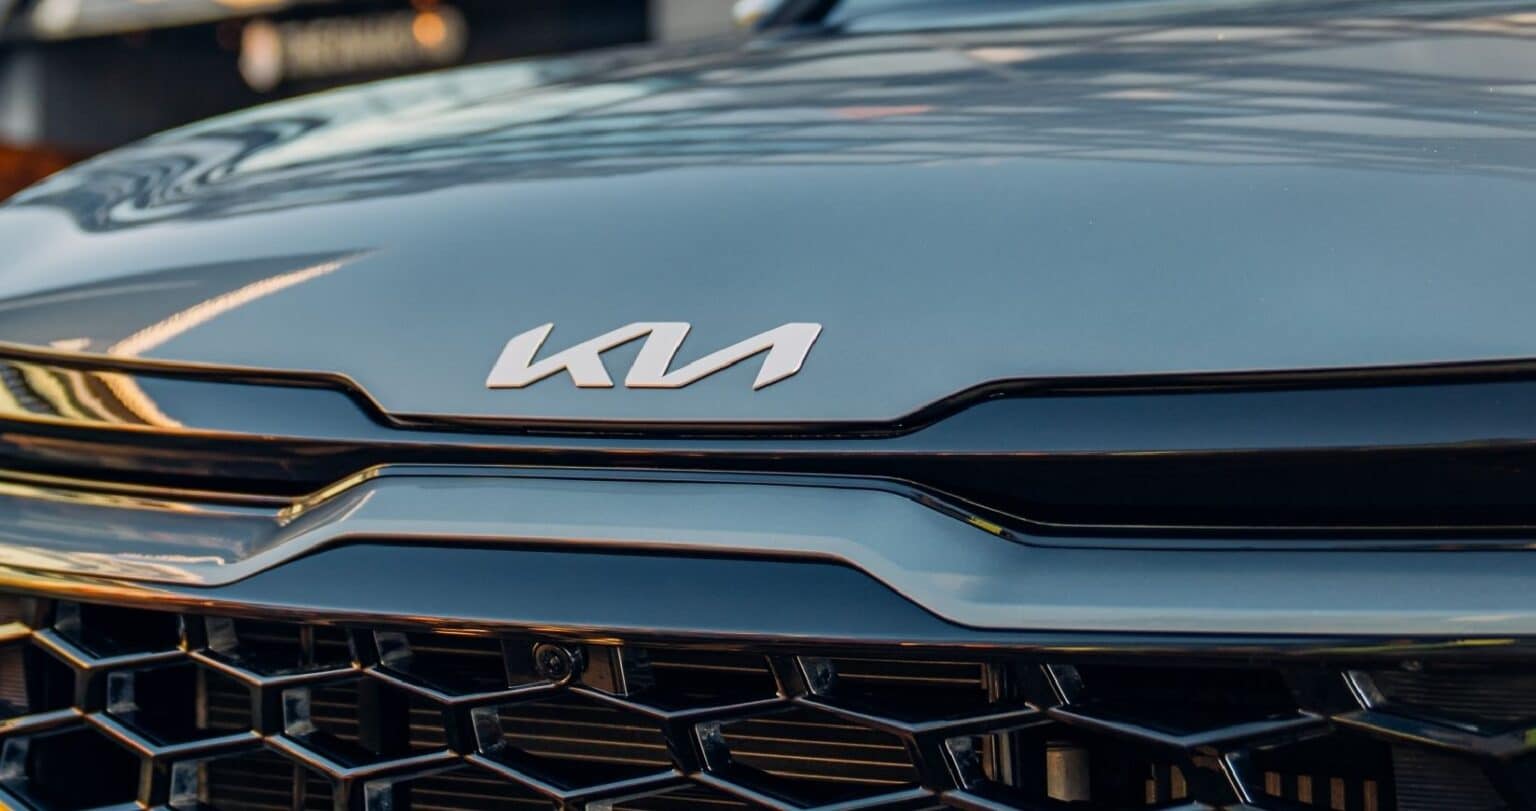 Coche KN, KN coche, KN car, el nuevo logo de KIA